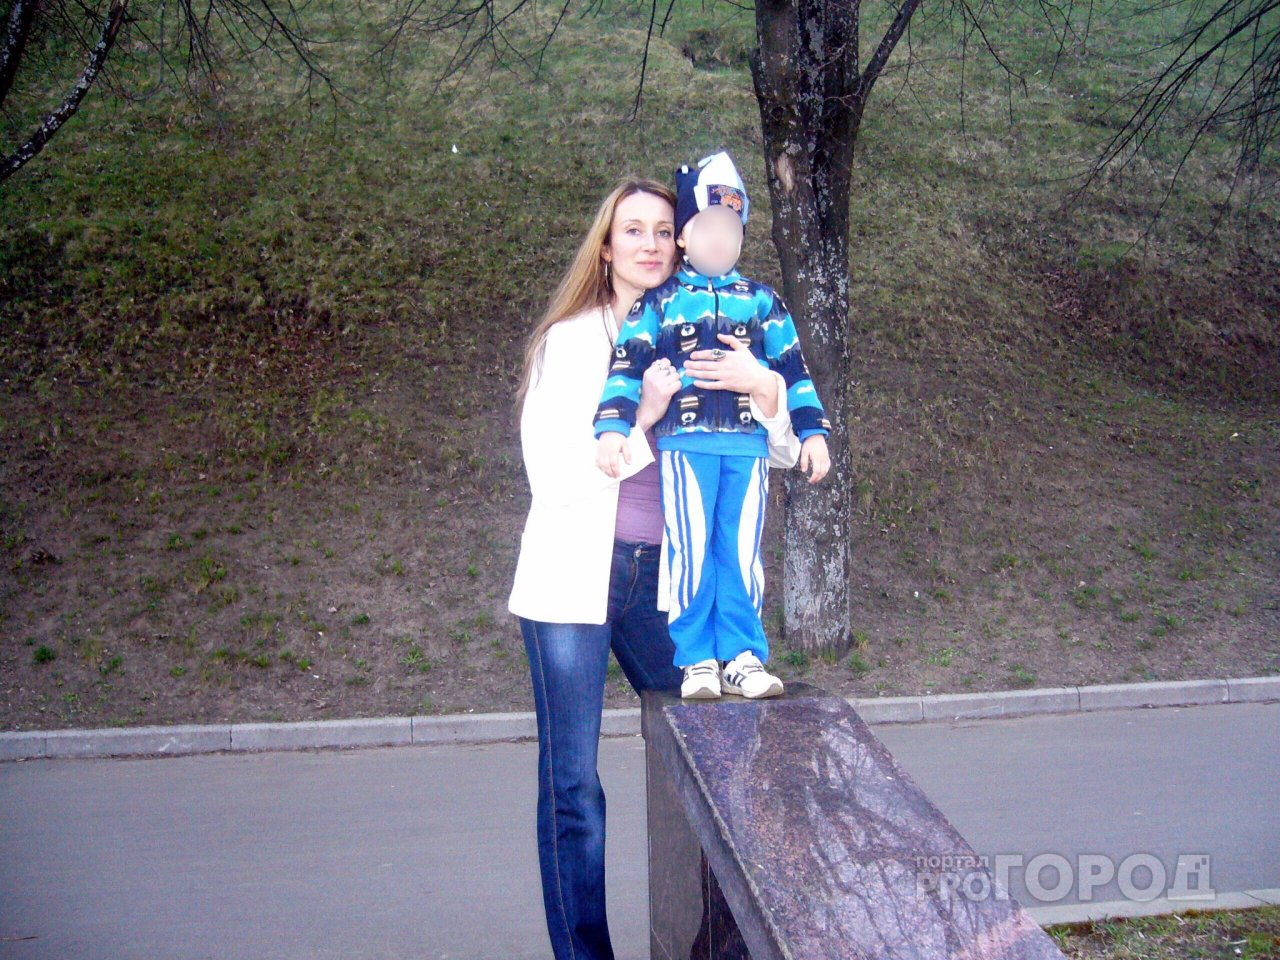 Посмертно: убитой в Ярославле матери двоих детей предстоит психиатрическая экспертиза